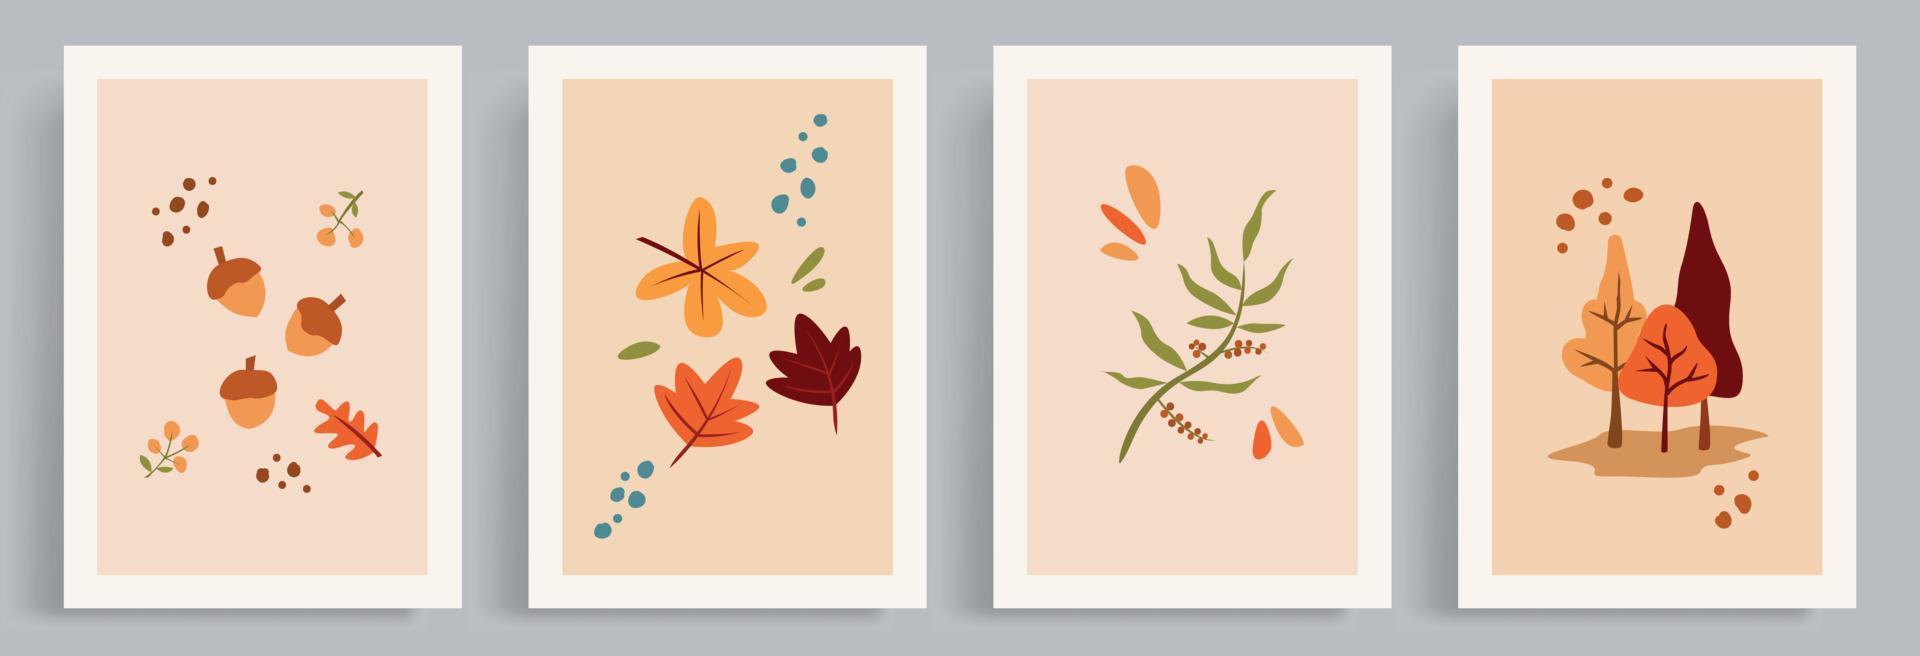 4 coleções de ilustrações vetoriais de outono com uma atmosfera calorosa, hygge e aconchegante. folha avermelhada e ornamento de árvore em estilo boho e cores retrô. vetor